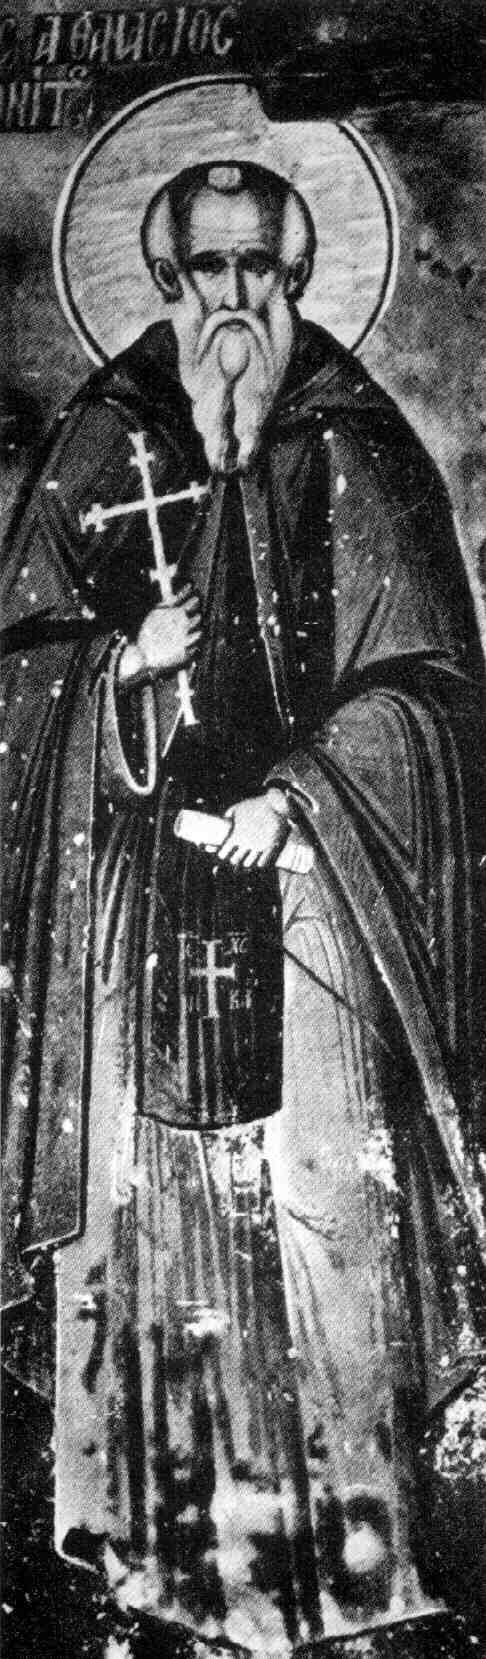 Ο Όσιος Αθανάσιος ο Αθωνίτης ιδρυτής της μοναχικής πολιτείας του Αγίου Όρους.